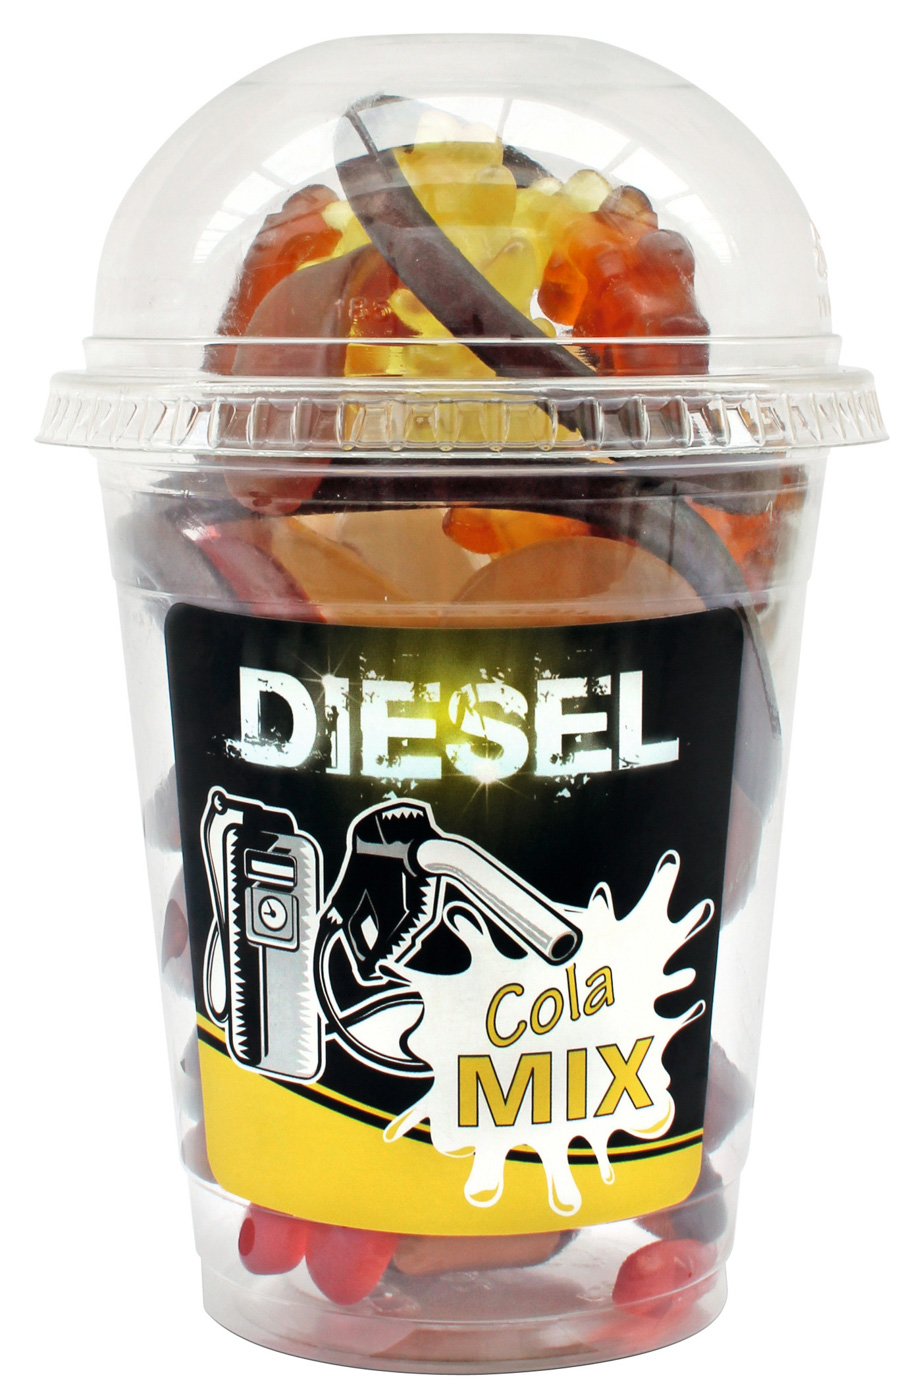 Diesel Cola Mix Fruchtgummi Mix-Becher 200G